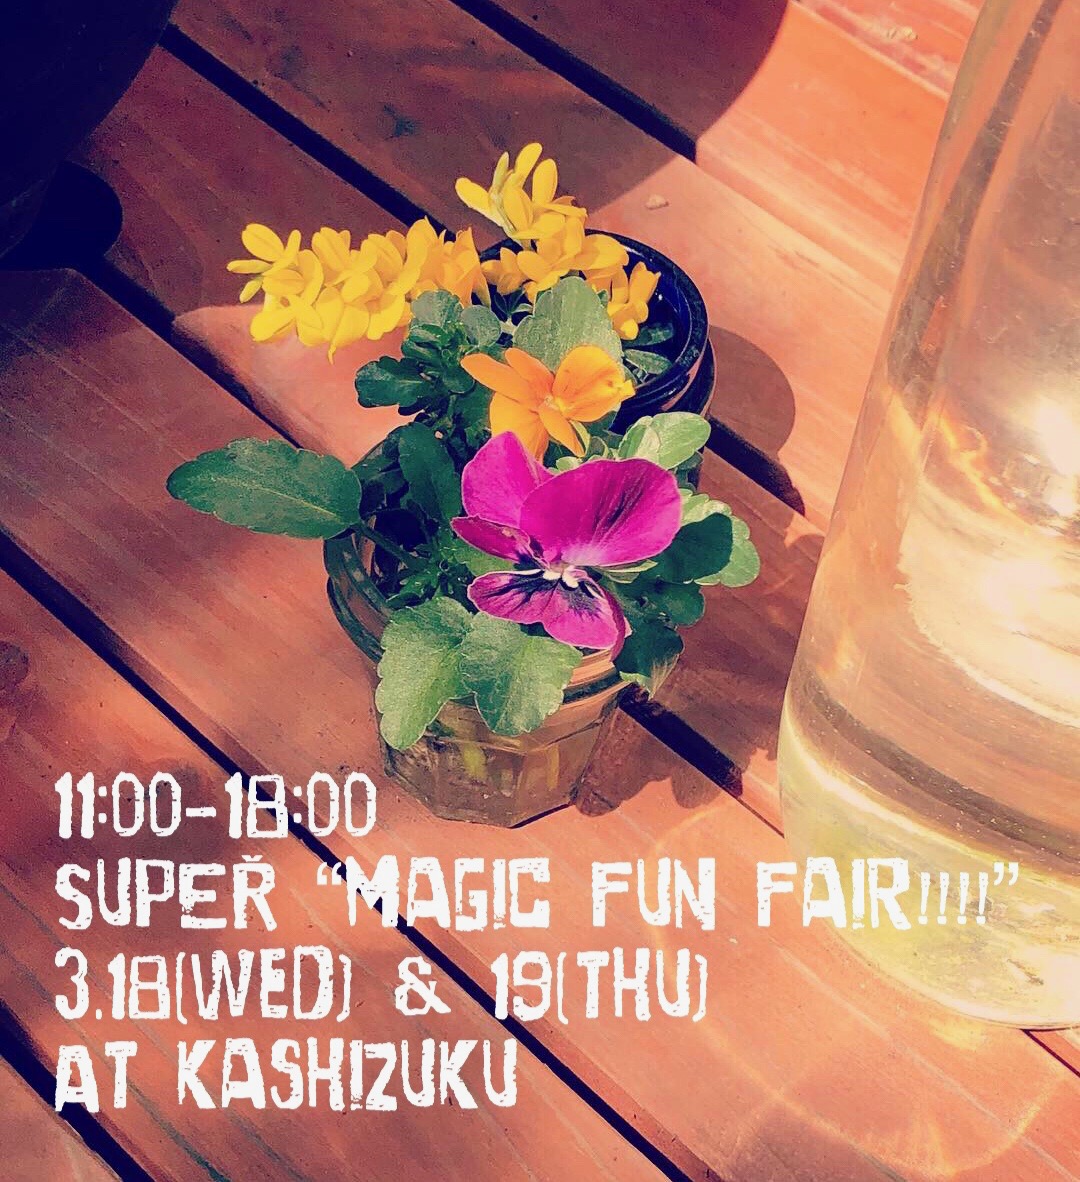 SUPER "magic fun fair!!!!" VOL.11